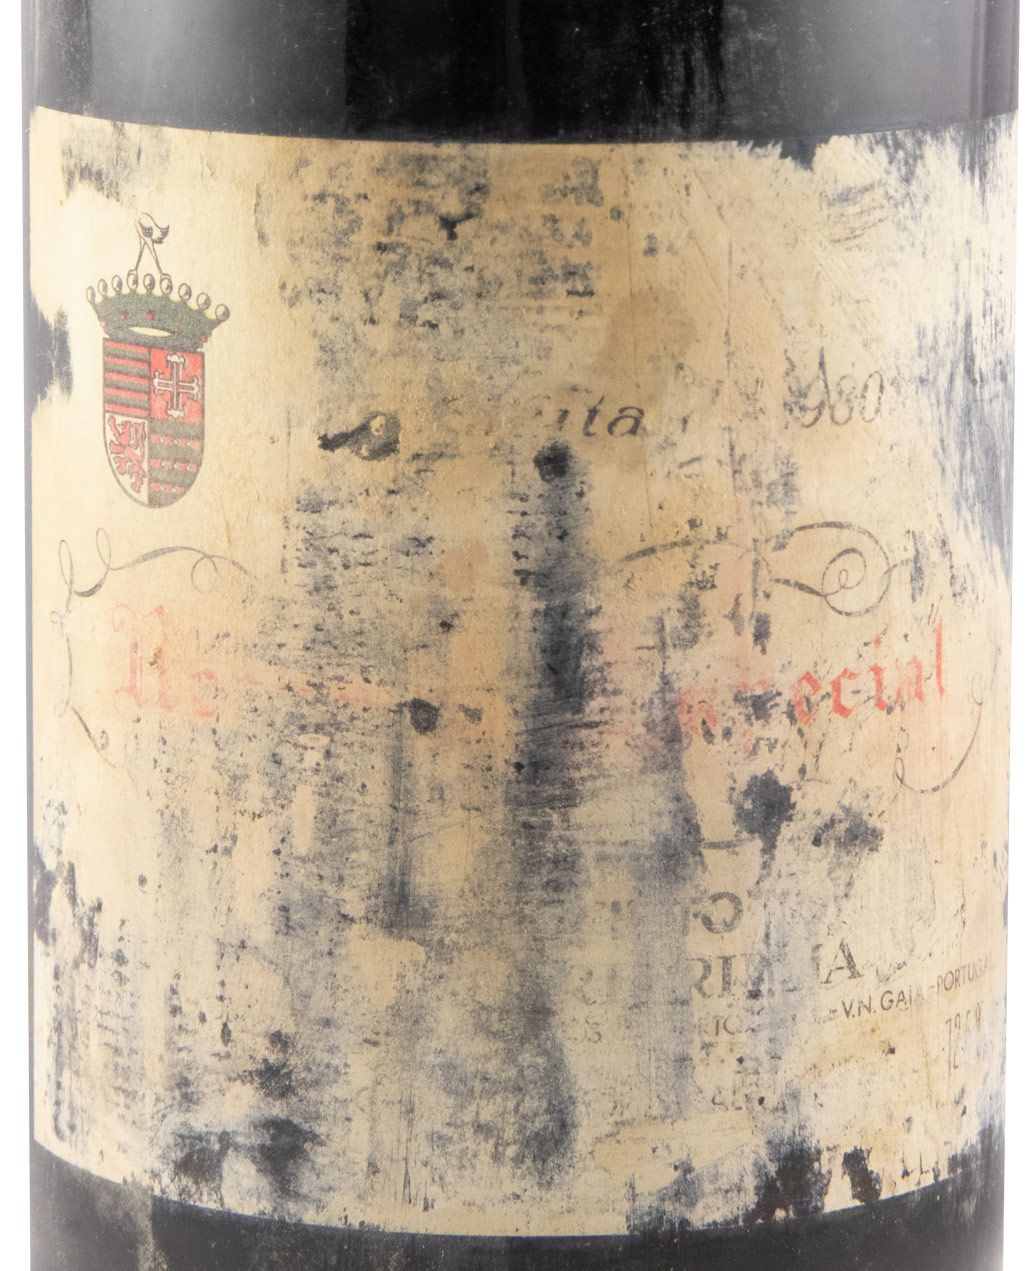 1980 Casa Ferreirinha Reserva Especial red (damaged label)